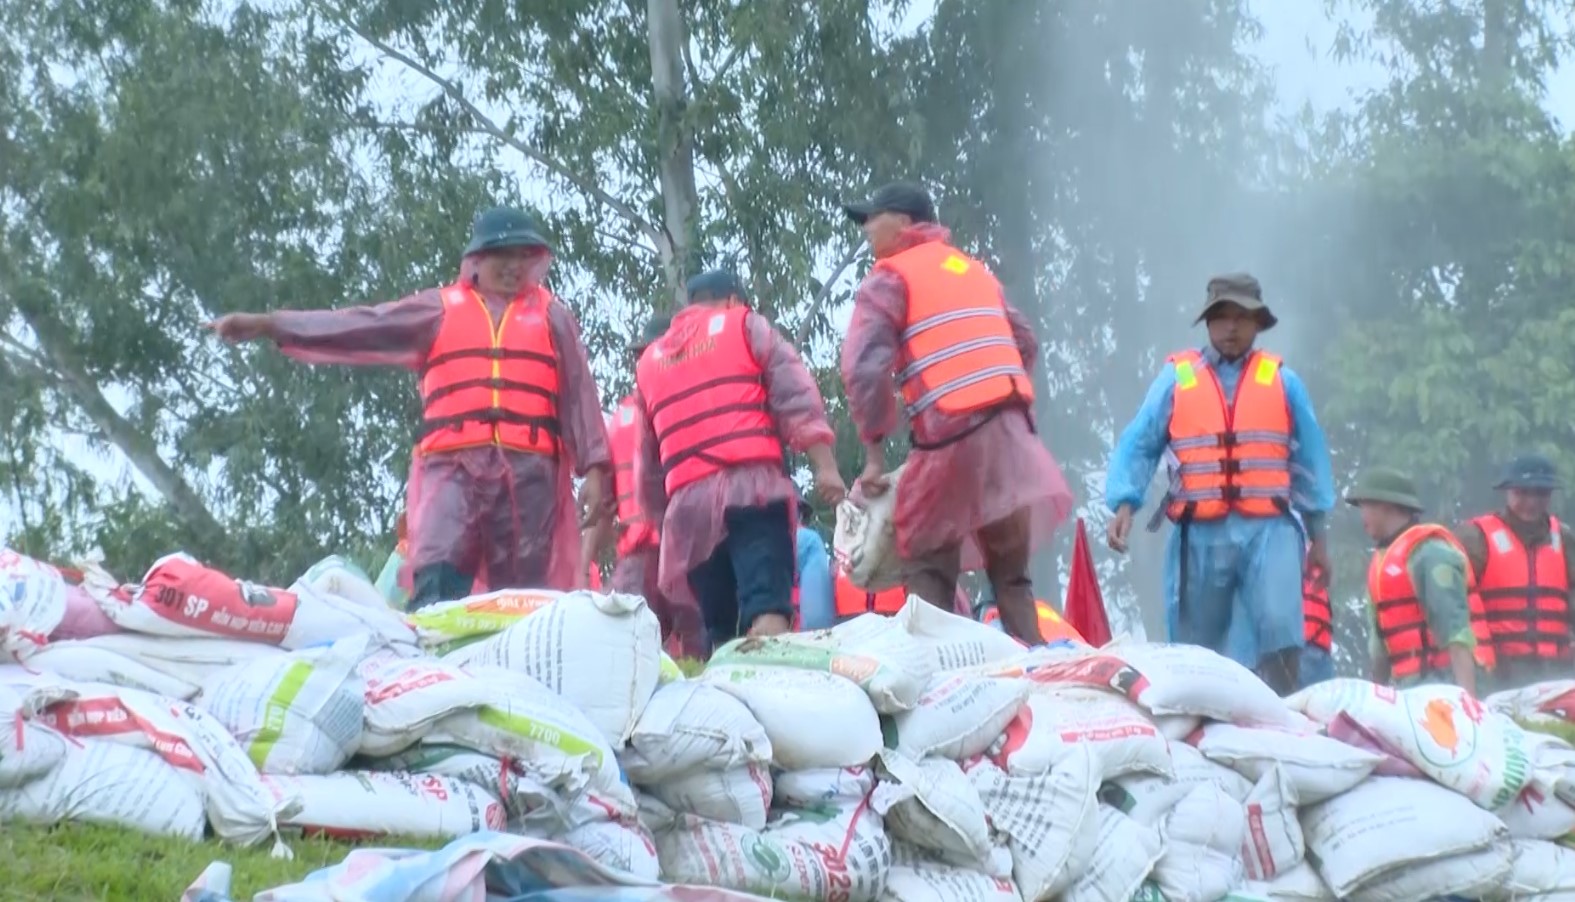 Huyện Thiệu Hóa diễn tập phòng chống lụt bão, tìm kiếm cứu nạn năm 2022 - Ảnh 2.